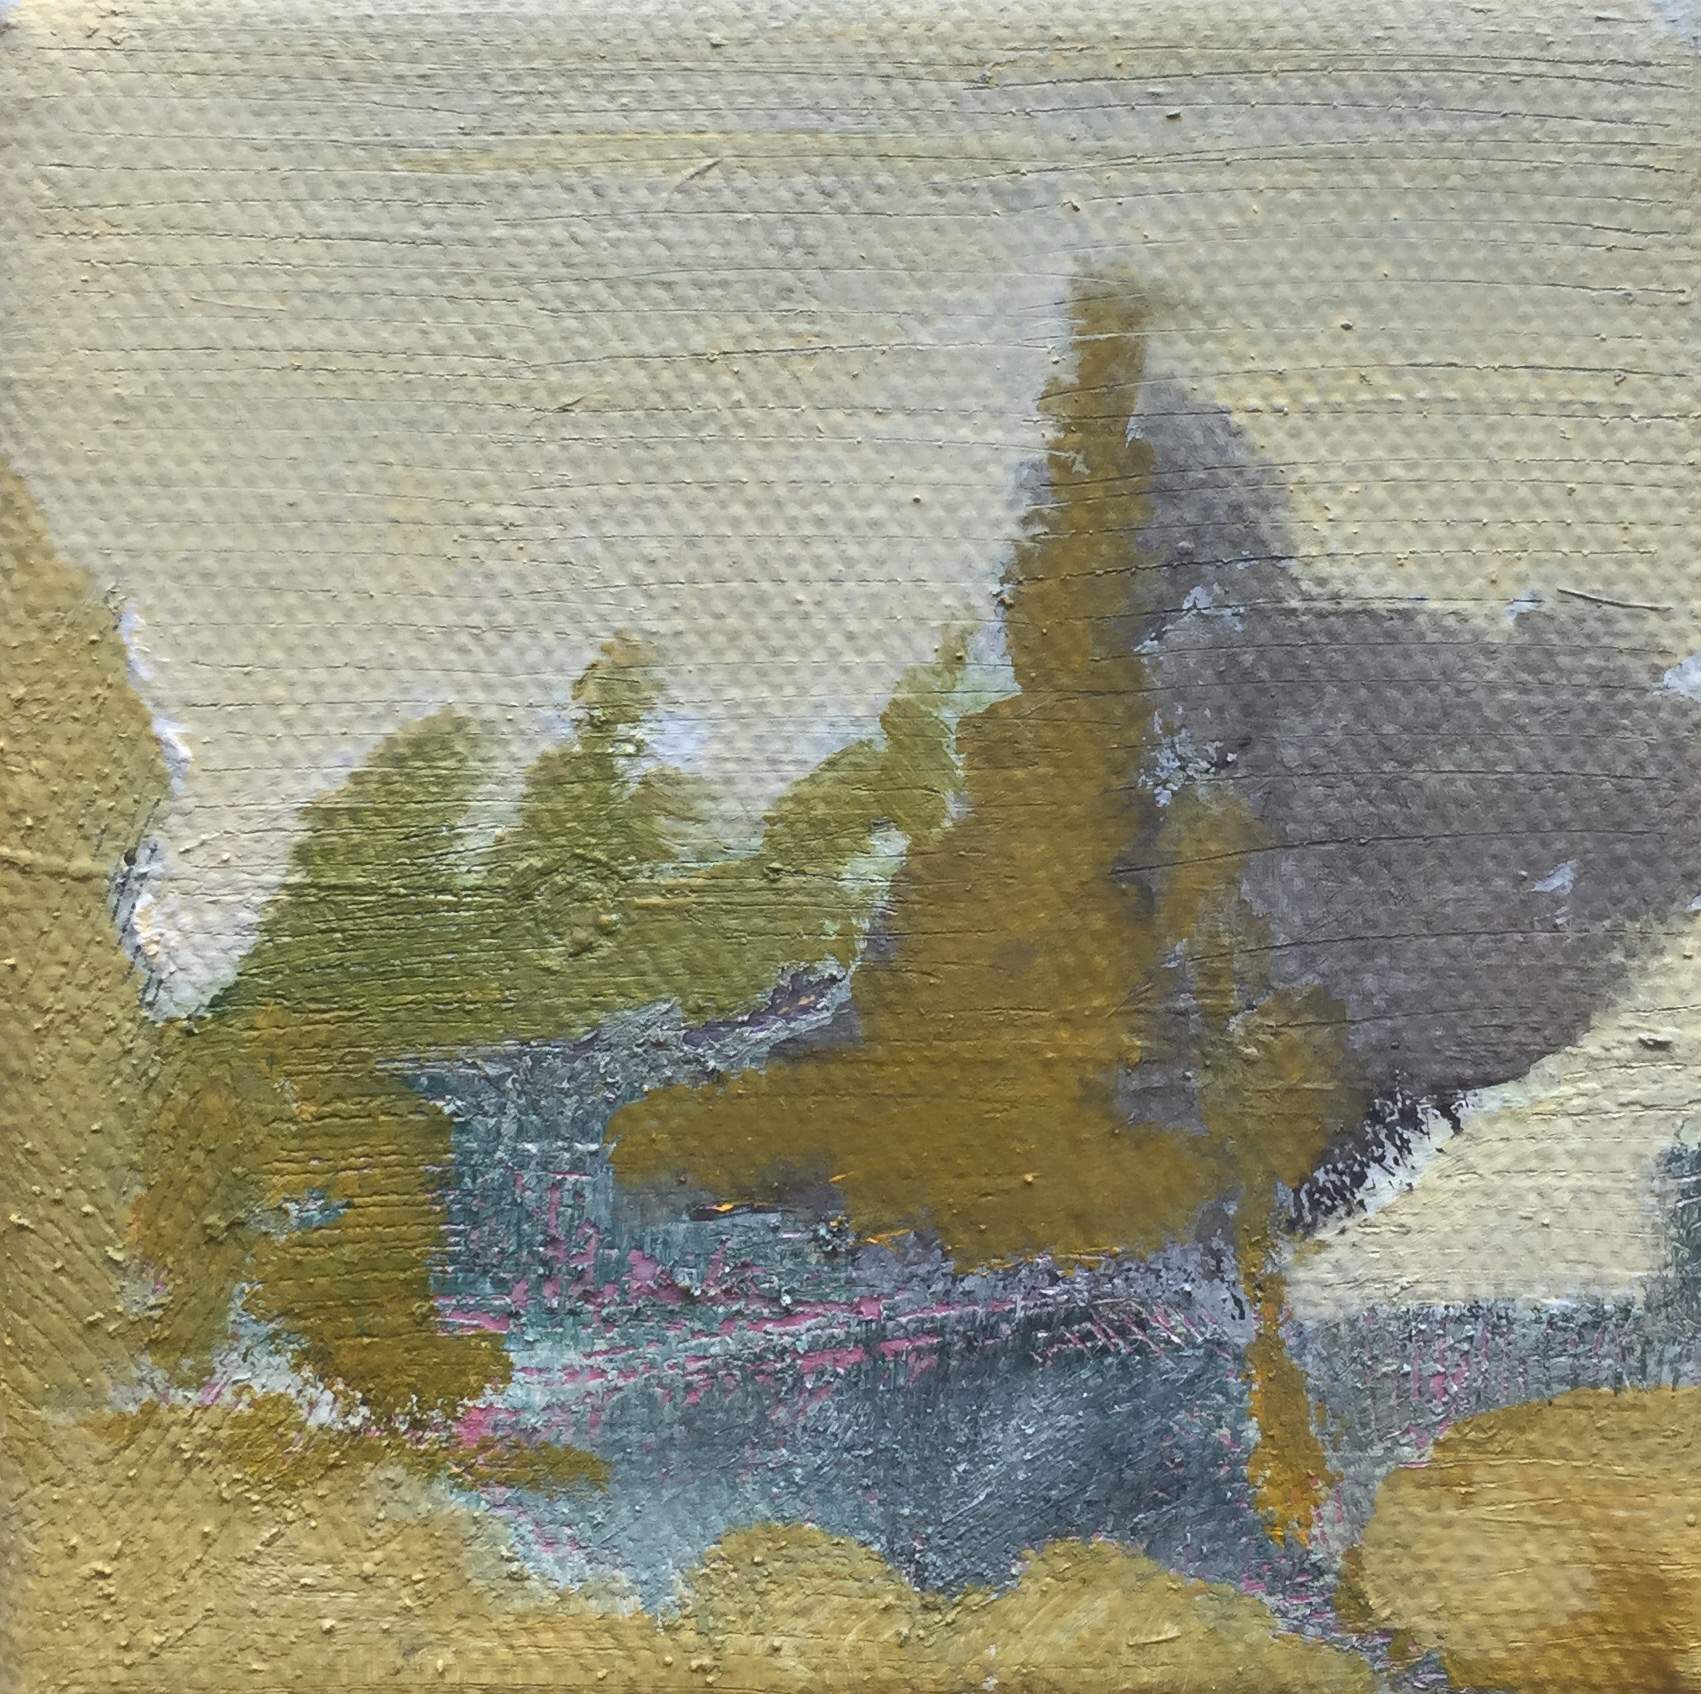 10 x 10 cm, oil paint on canvas